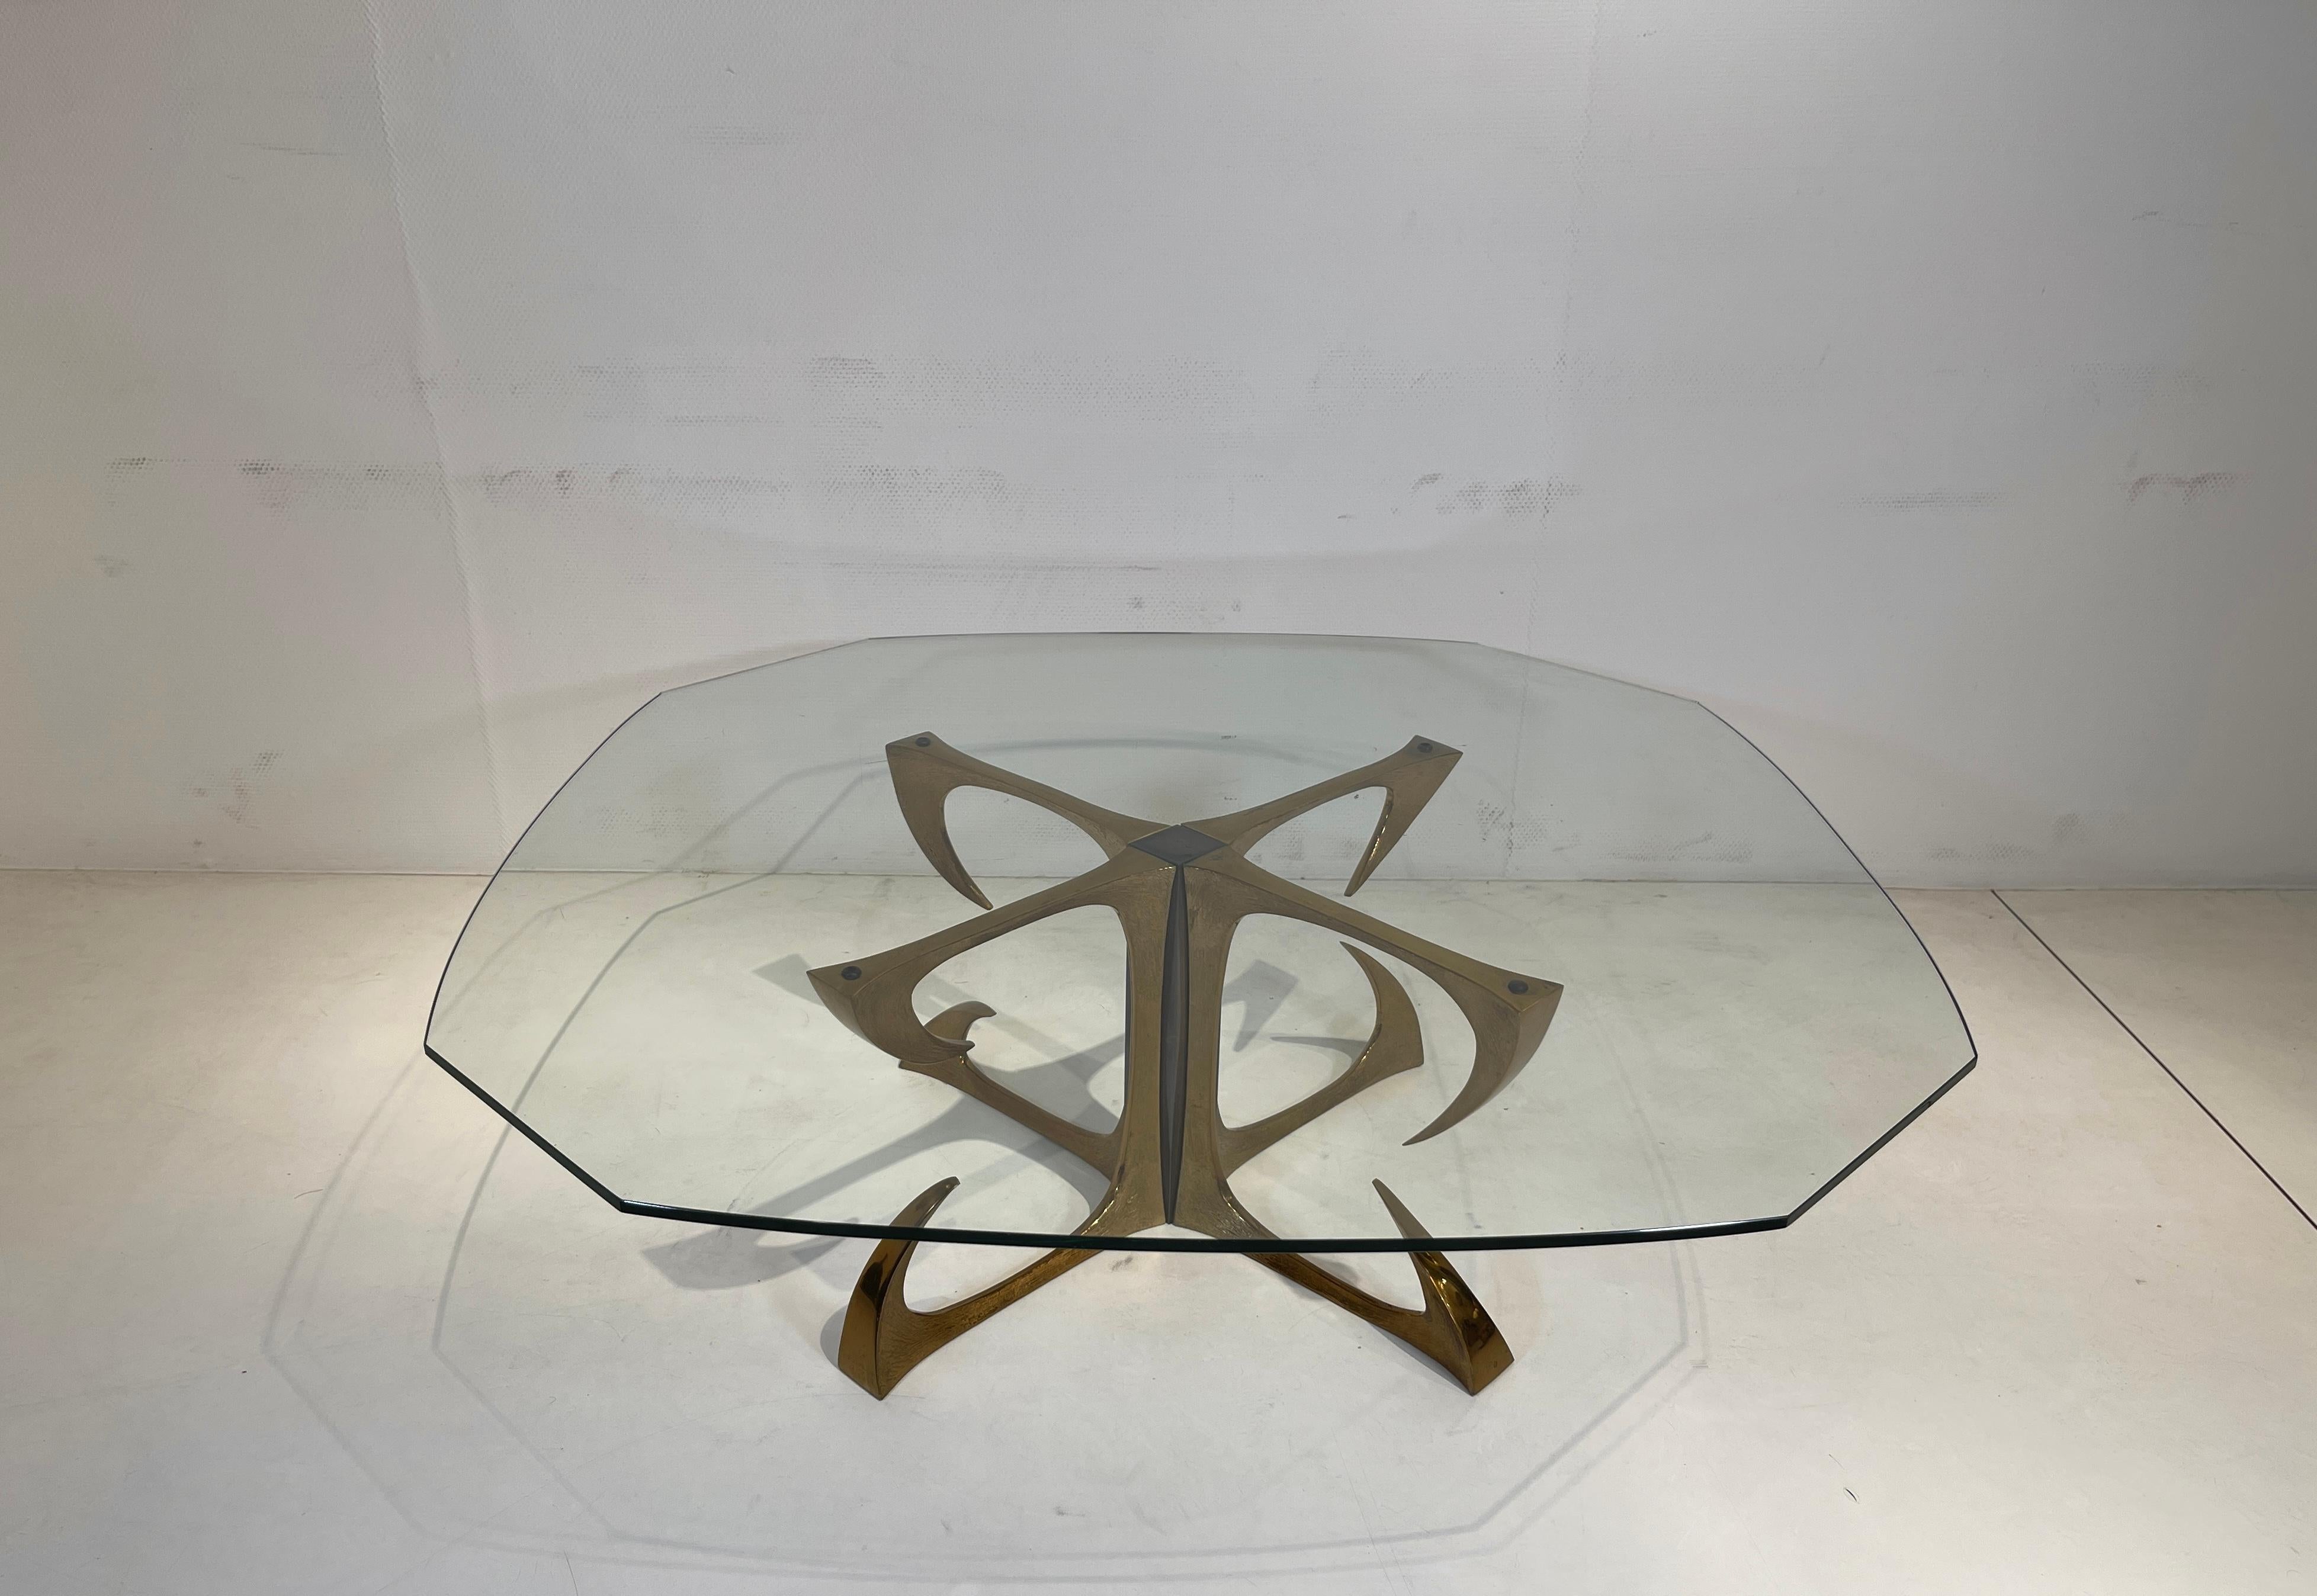 Seltener und einzigartiger Couchtisch in skulpturaler Bronze, Messing und Stahl von Willy Daros aus den 70er Jahren. in originalem und sehr gutem Zustand, mit einer Glasplatte.
Abmessungen: 71x36hcm.
Abmessungen mit dem oberen Glas: 110x121x37hcm.